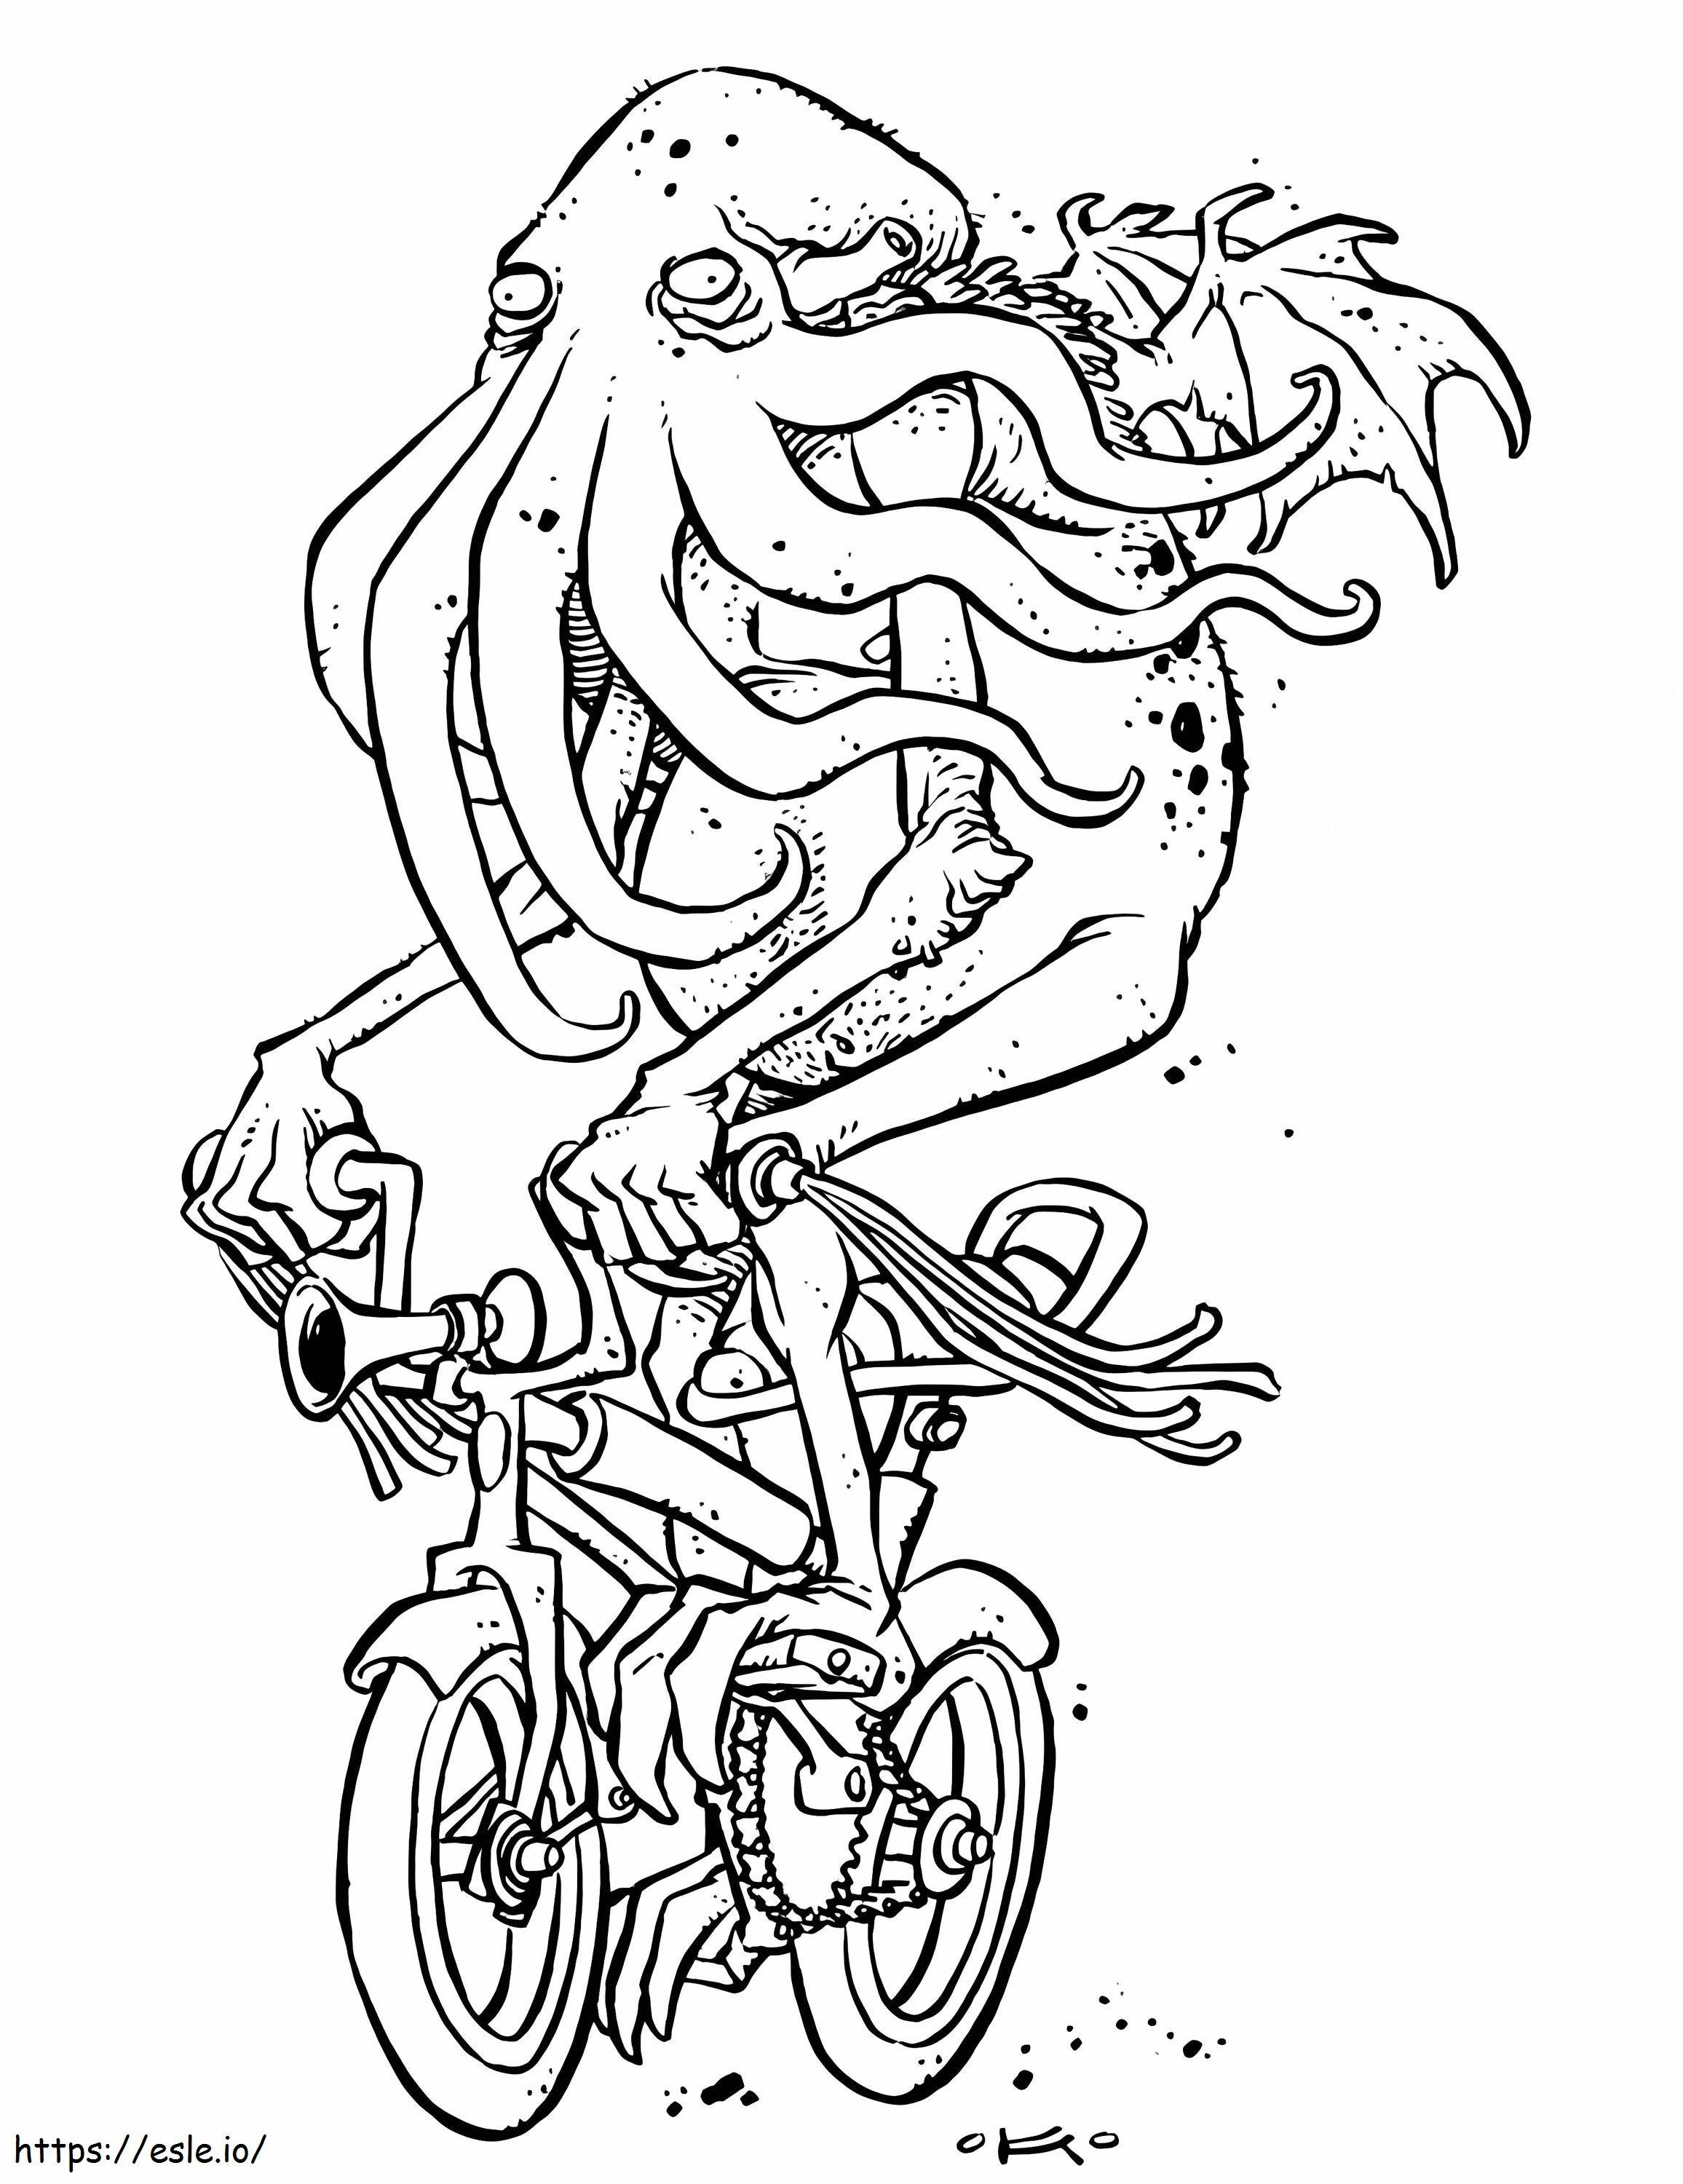 Cthulhu na rowerze kolorowanka